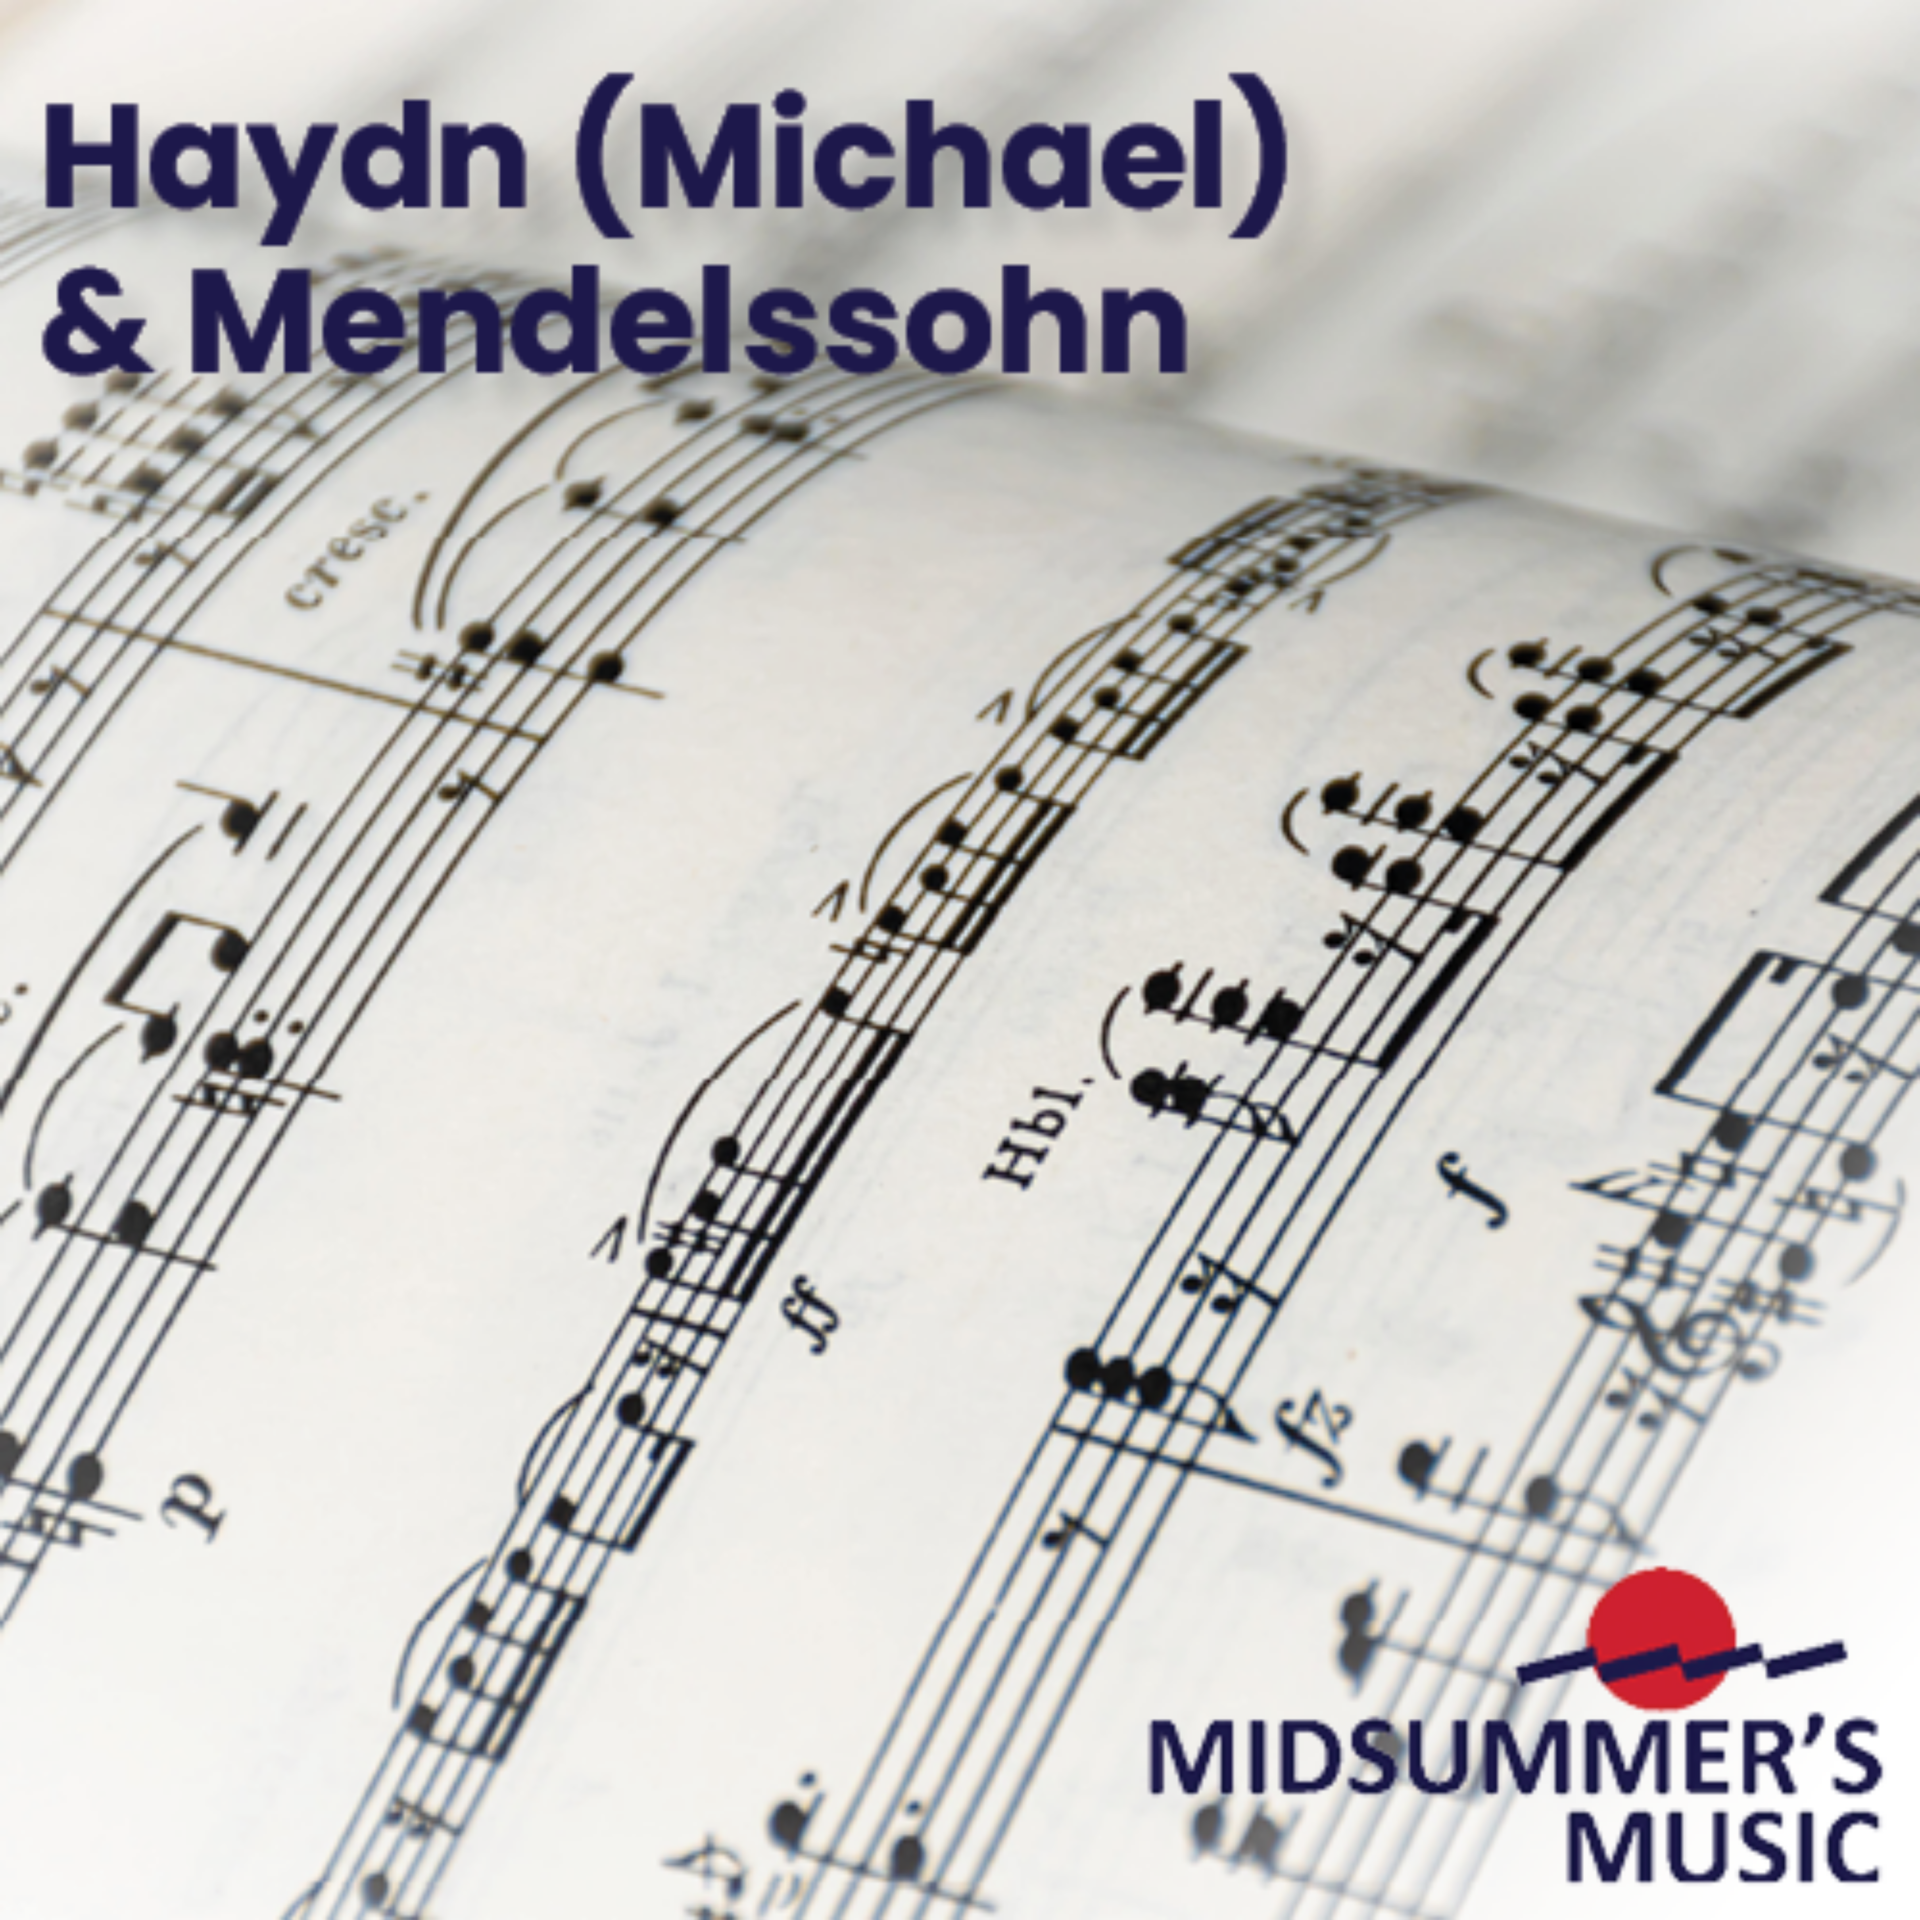 Haydn (Michael) & Mendelssohn: Midsummer's Music, July 23rd